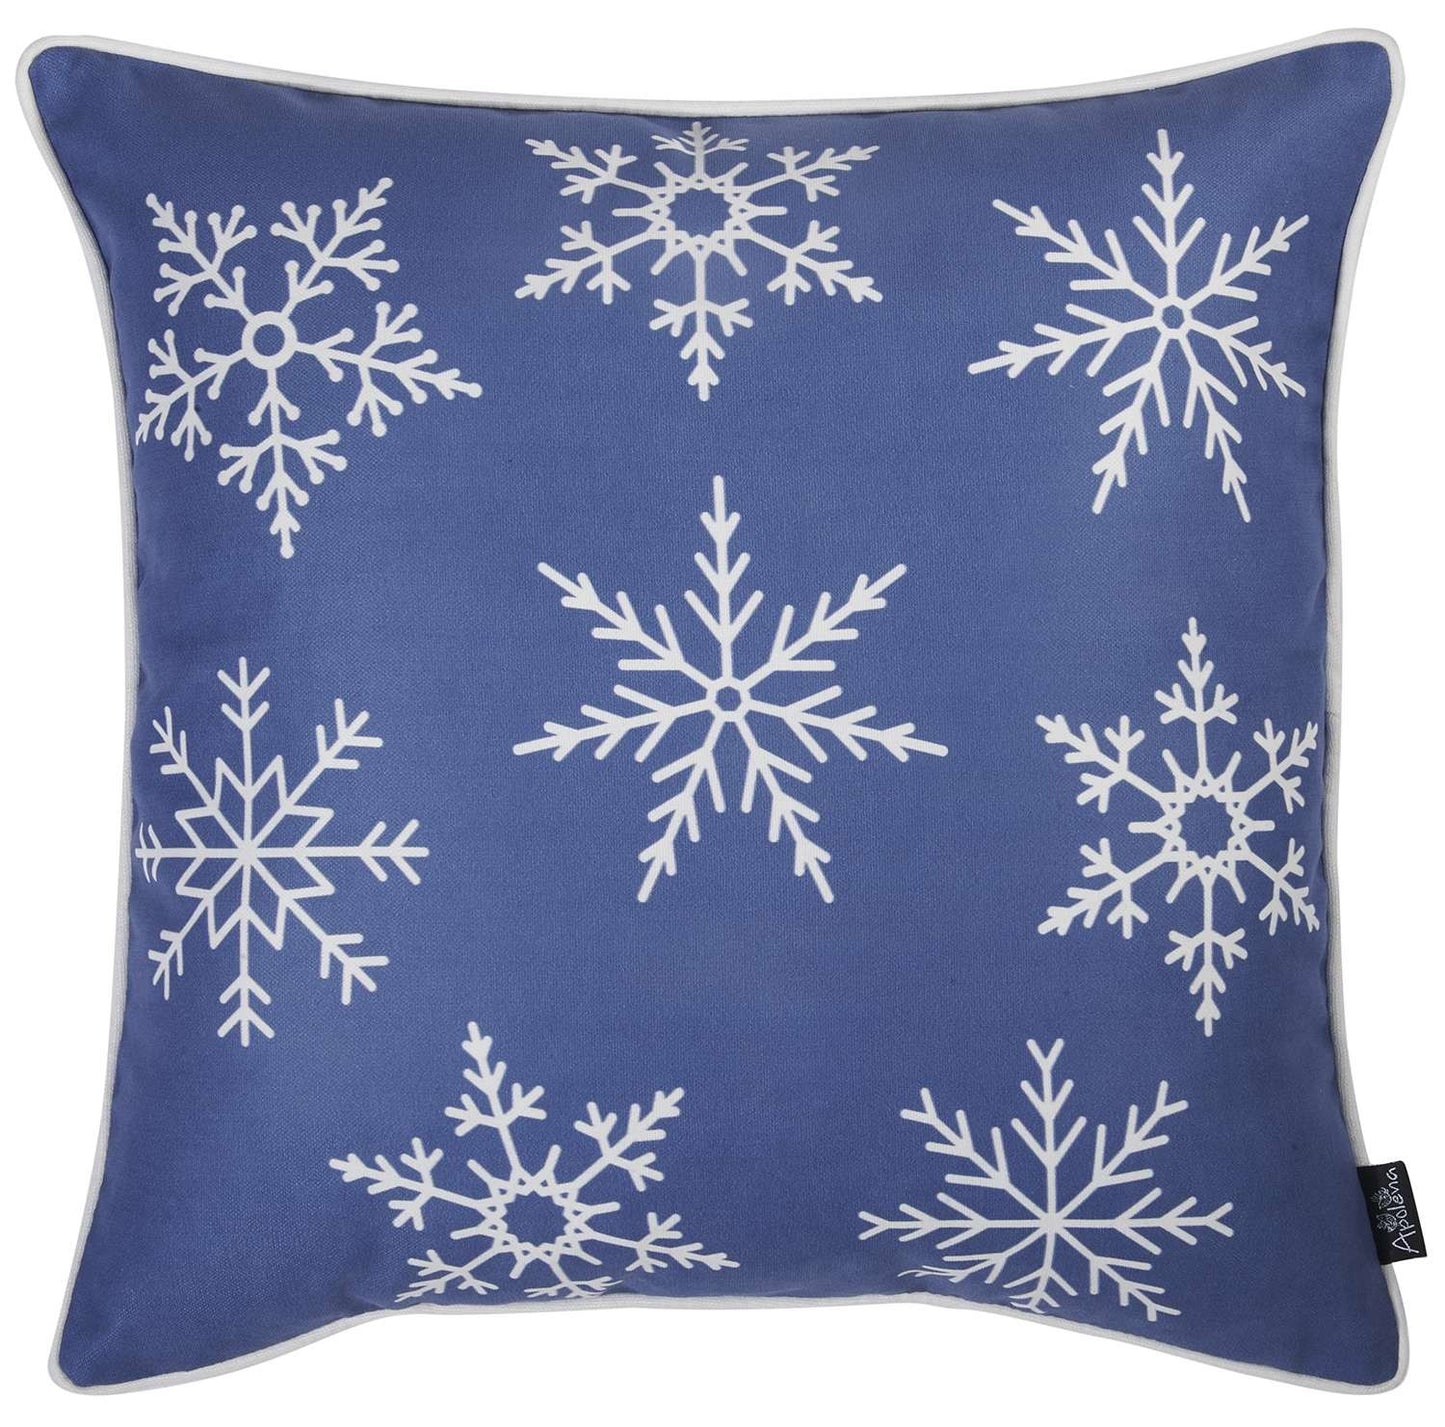 Blue and White Snowflakes Throw Pillow